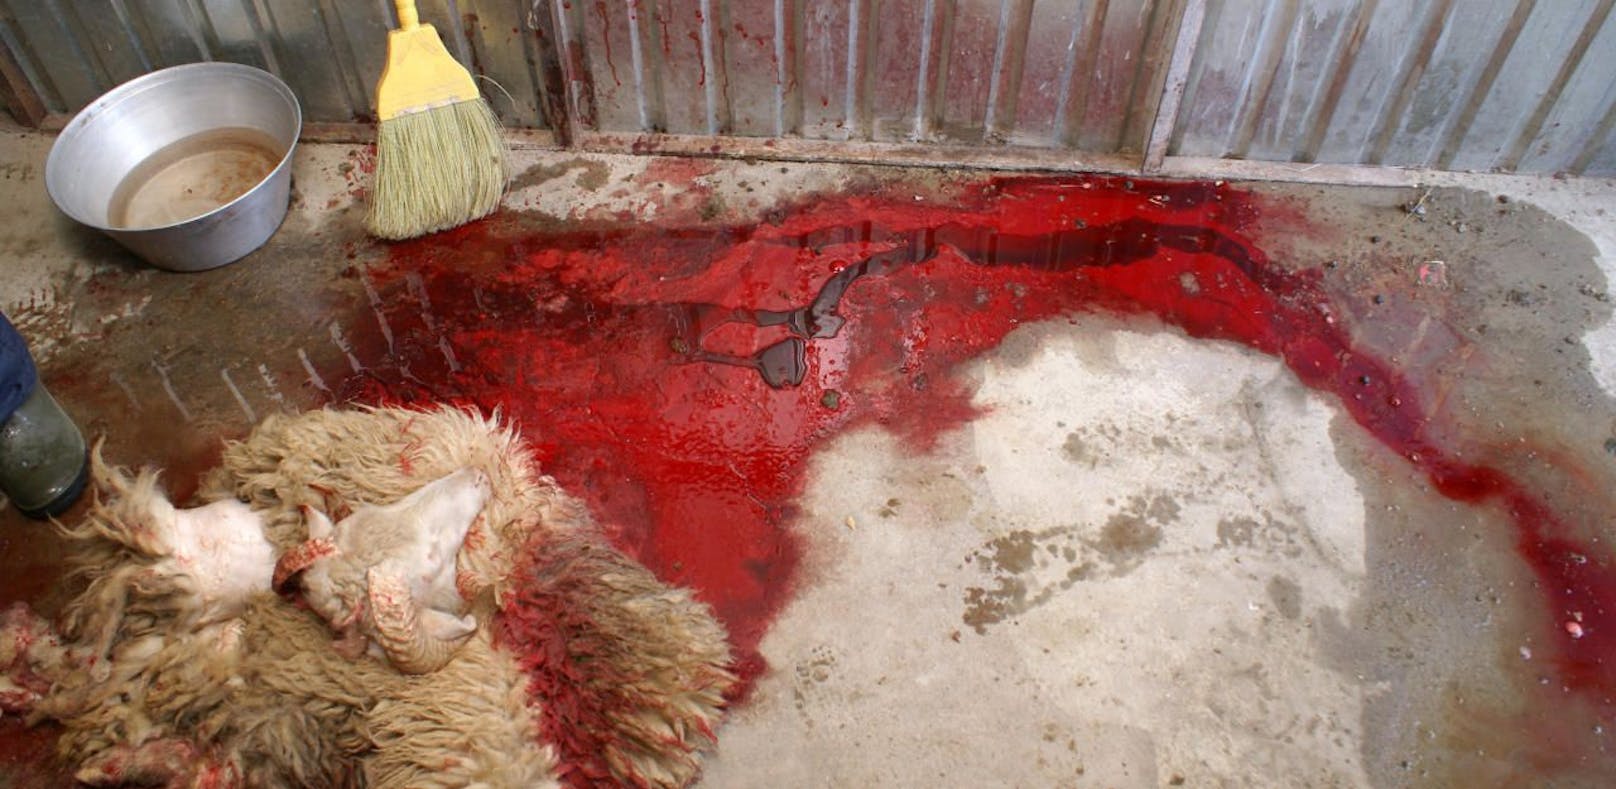 Tierschützer beklagen unnötiges Leid beim Ausbluten von Schafen.